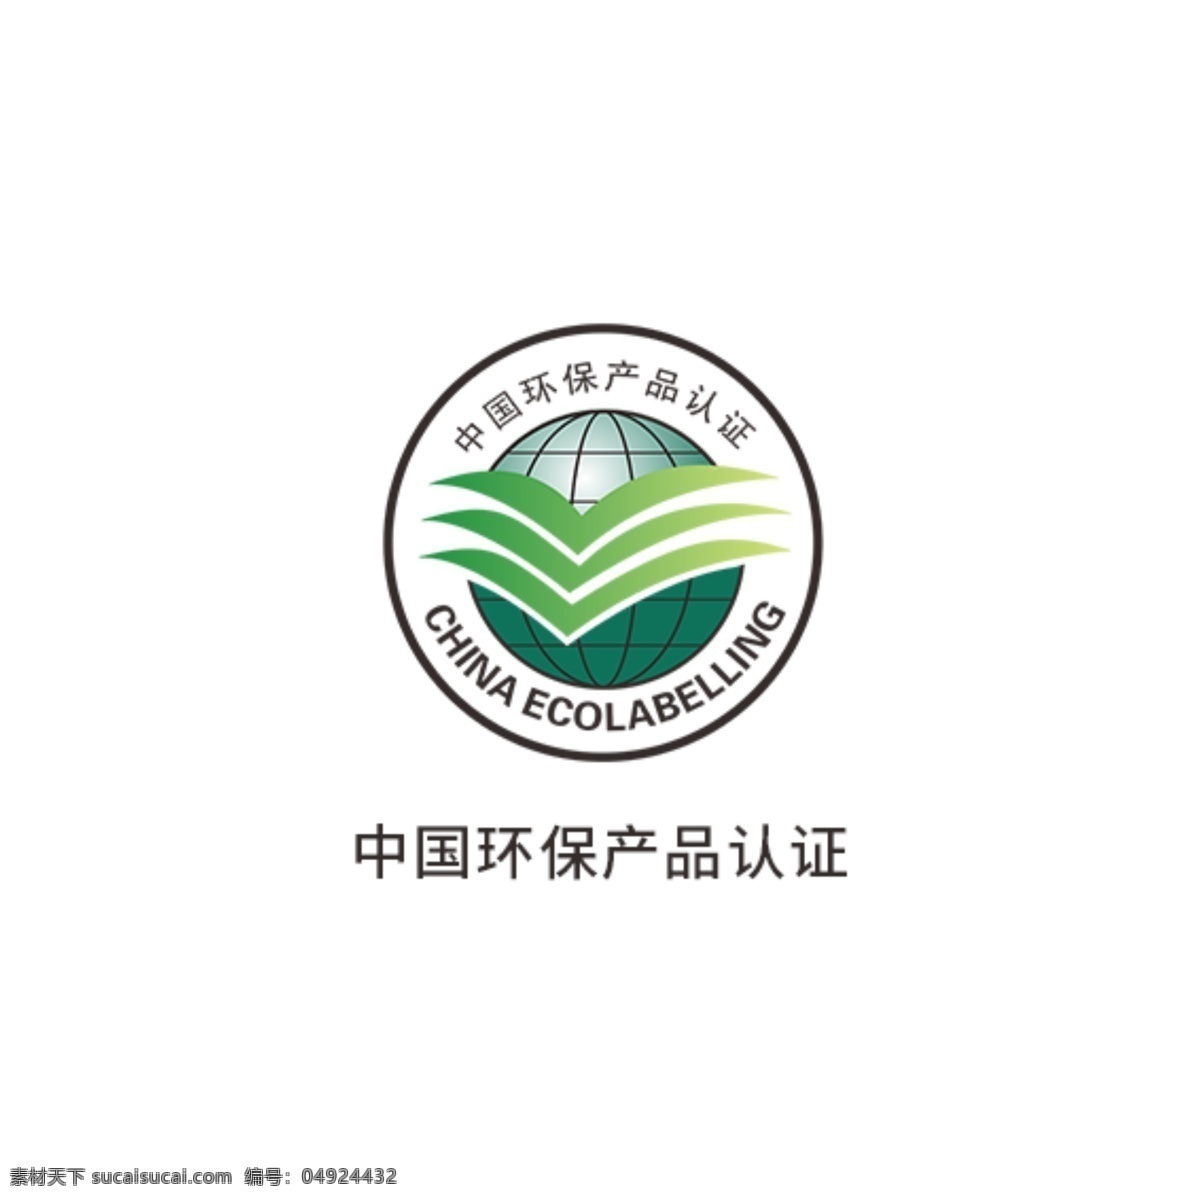 中国 环保 产品认证 环保标识 国家抗菌标志 中国卫生 监督标志 有机产品标志 中国节水标志 有机食品标志 中国环保 无公害农场品 环境标志 中国环境标志